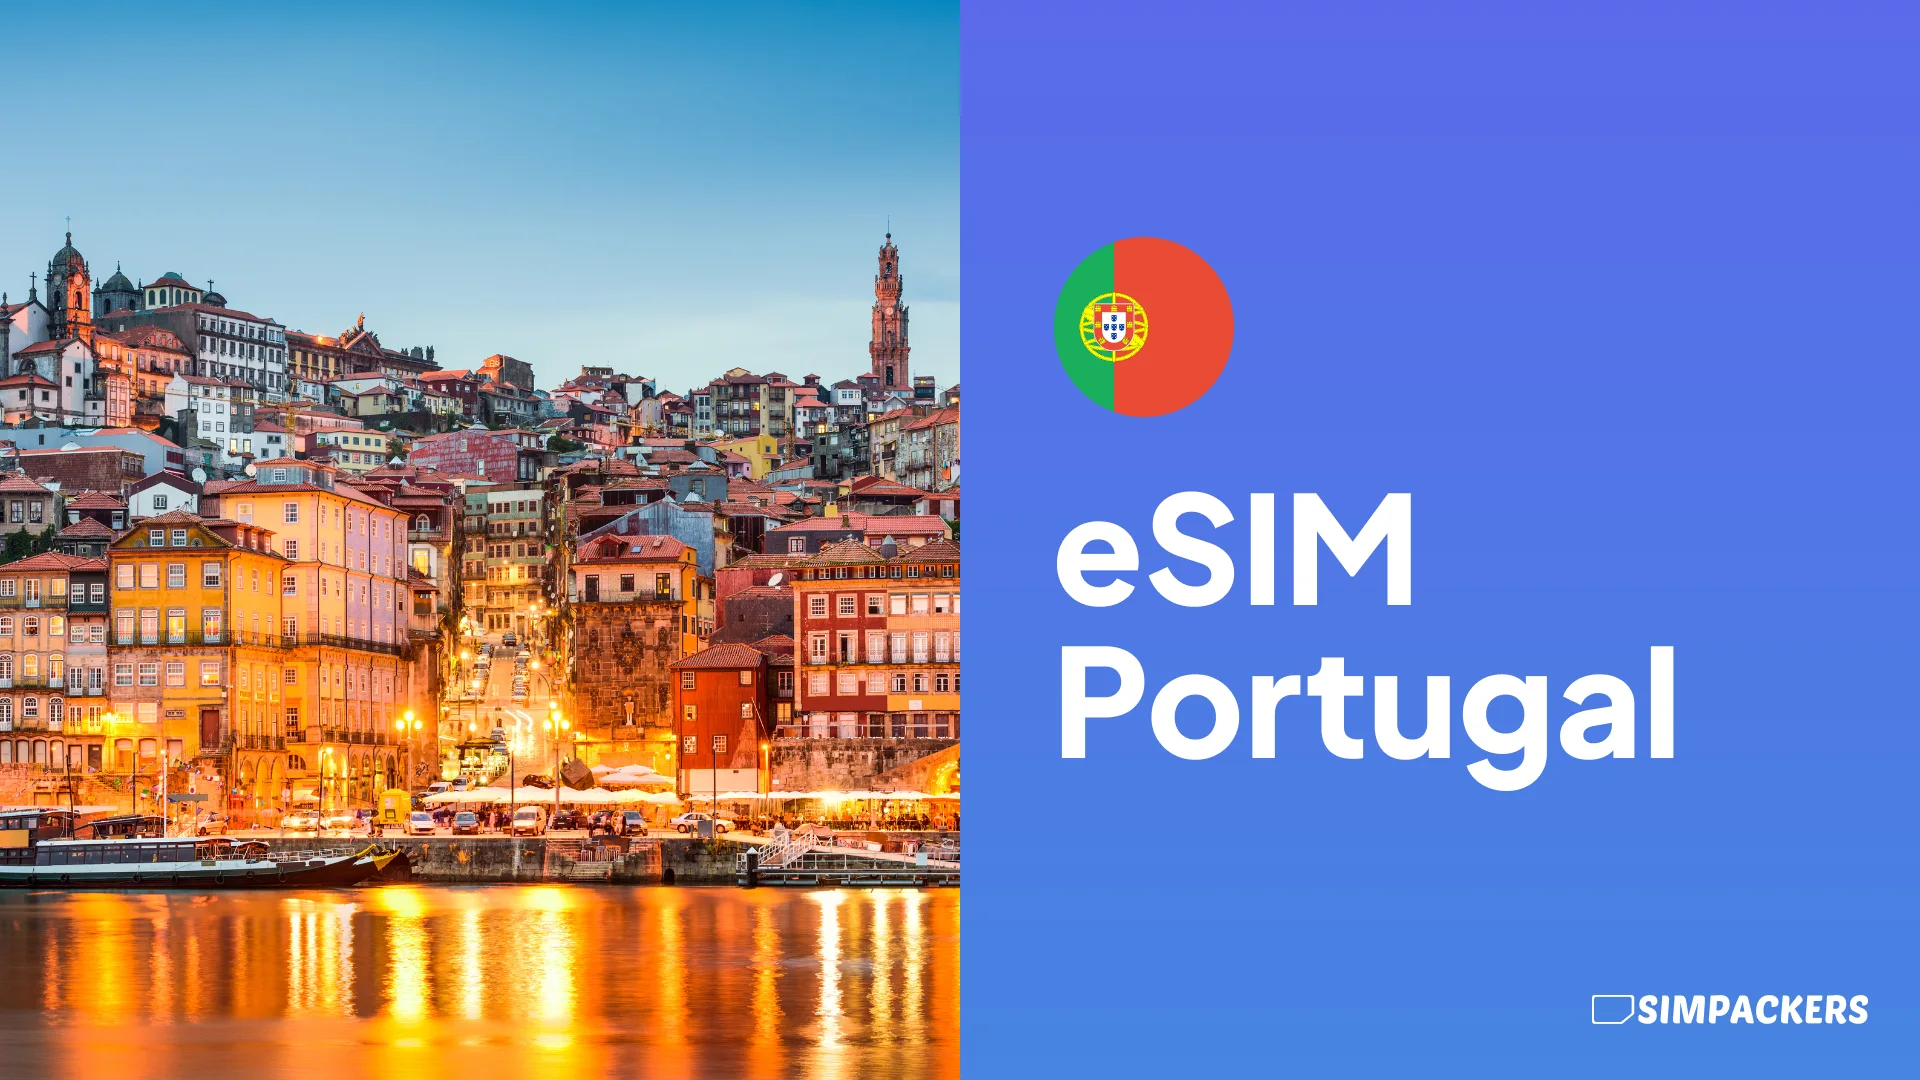 ES/FEATURED_IMAGES/esim-portugal.webp